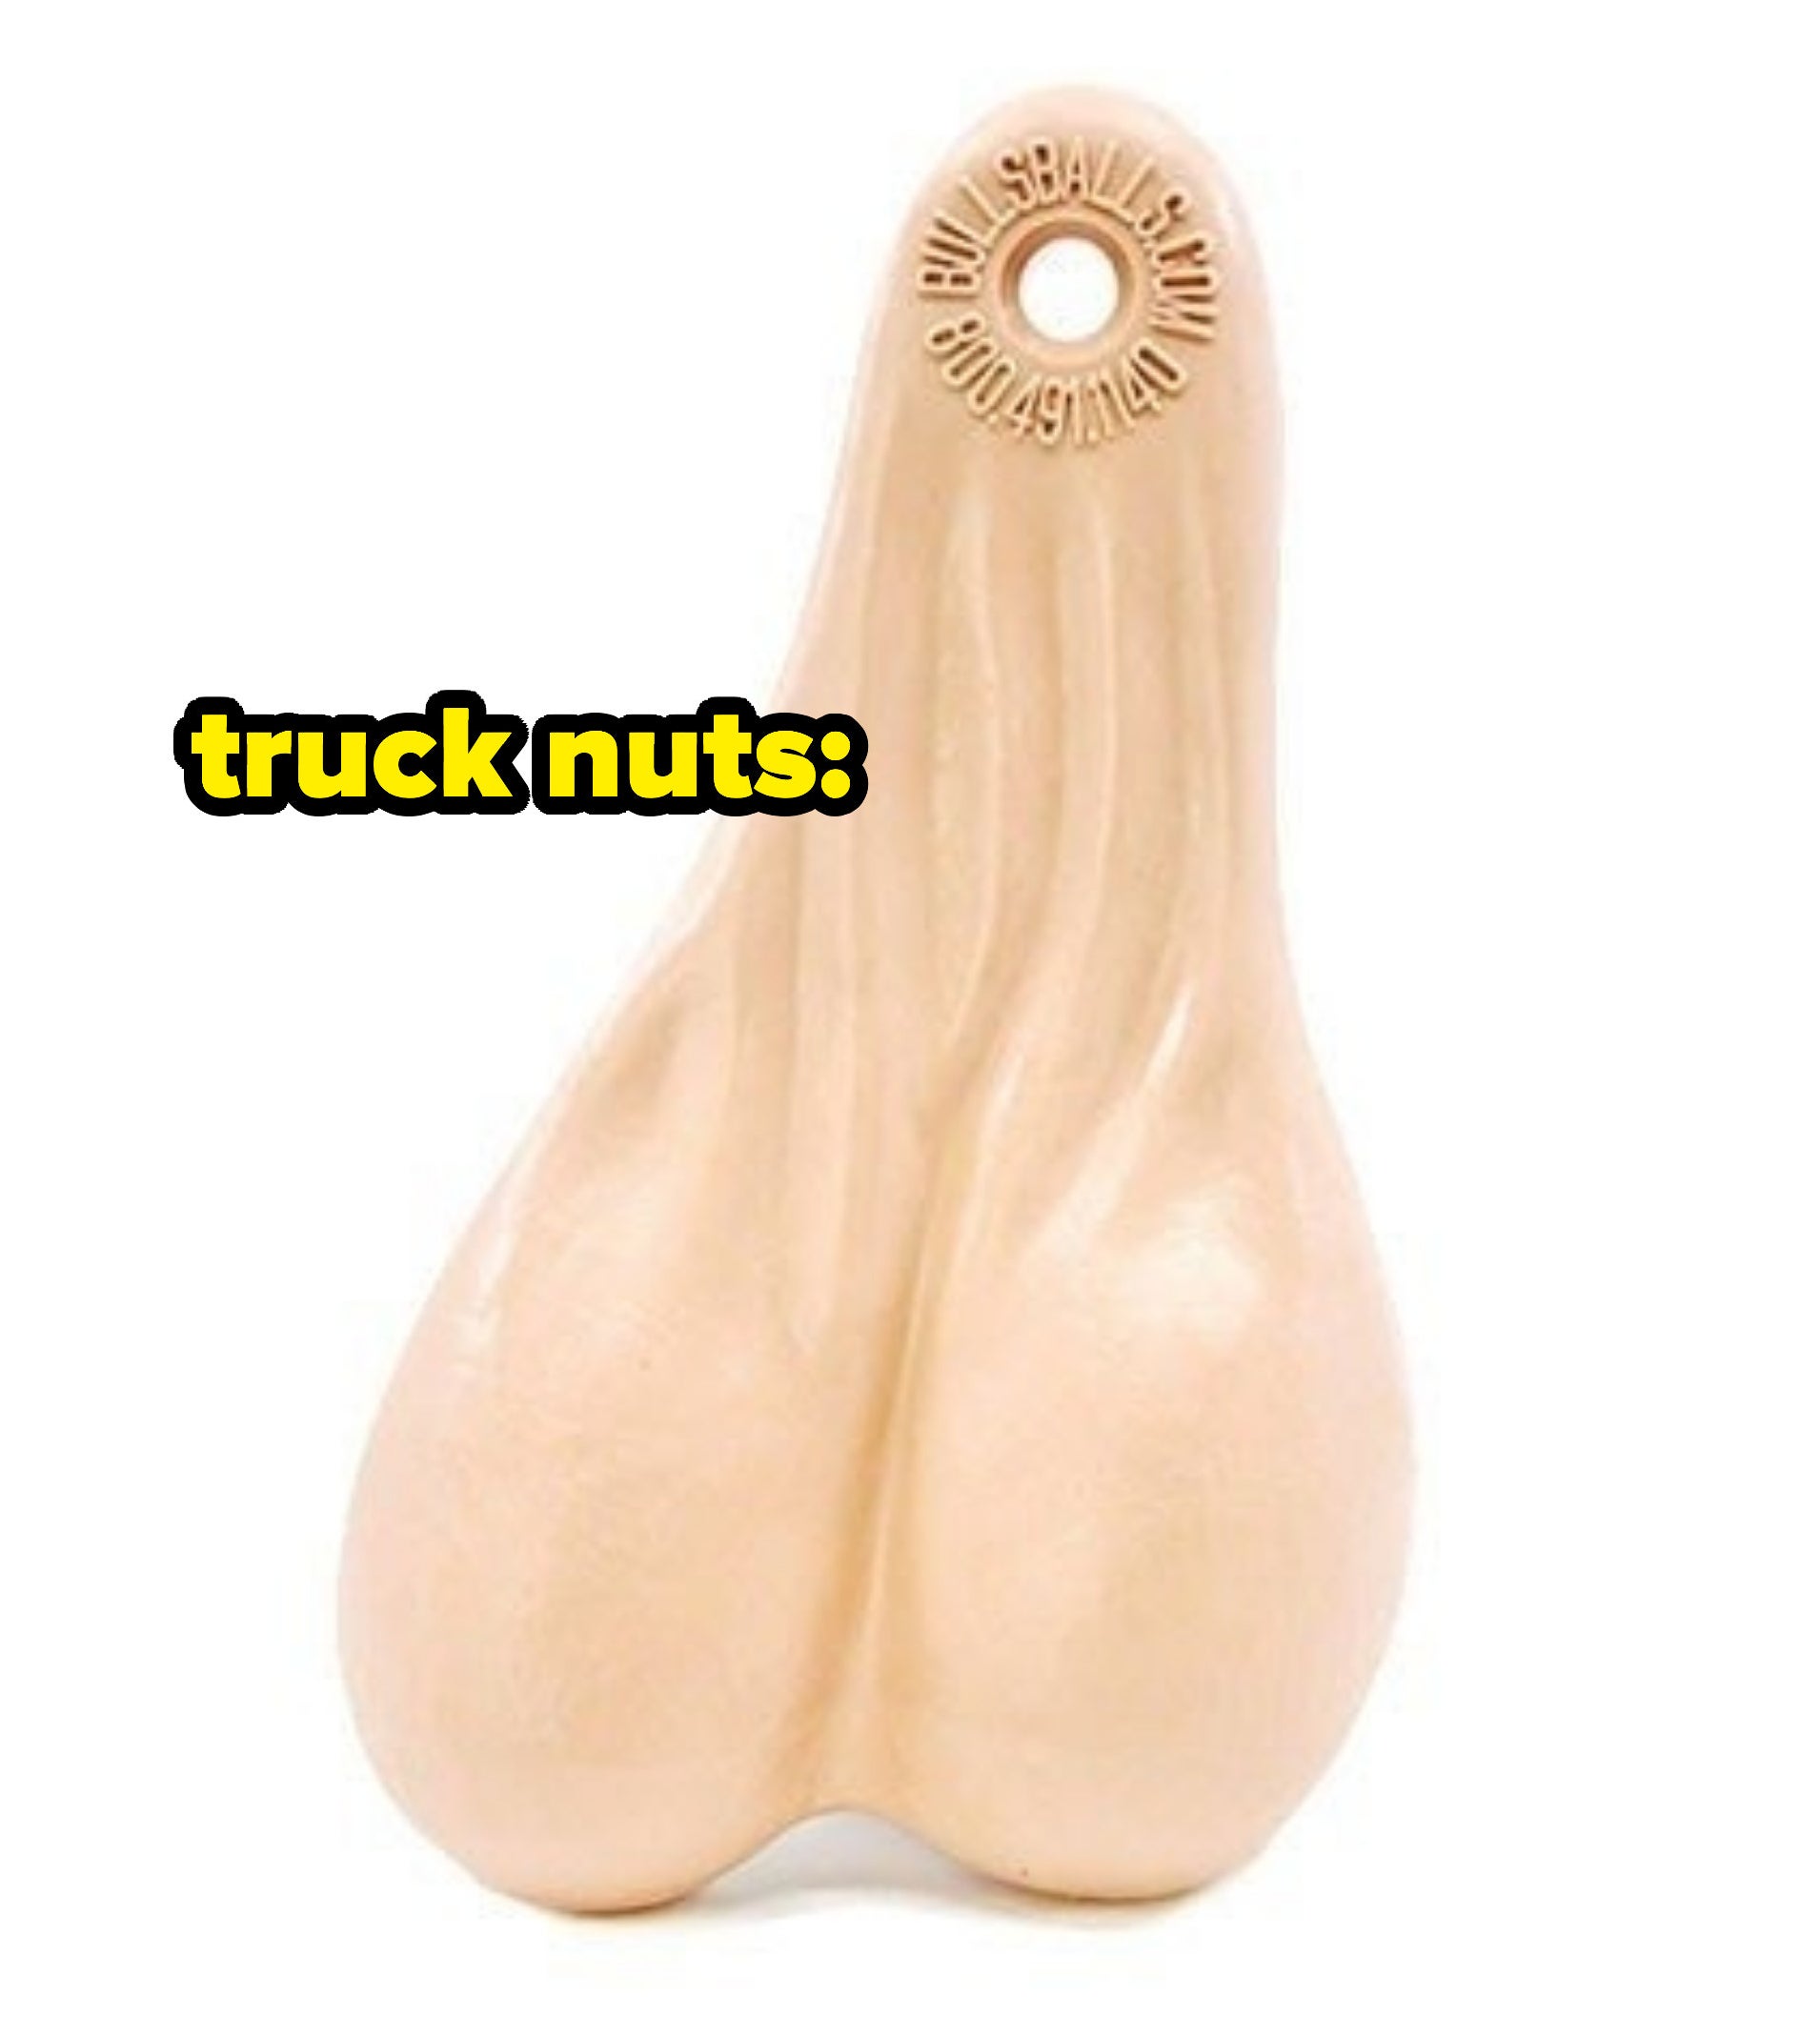 &quot;Truck nuts&quot;